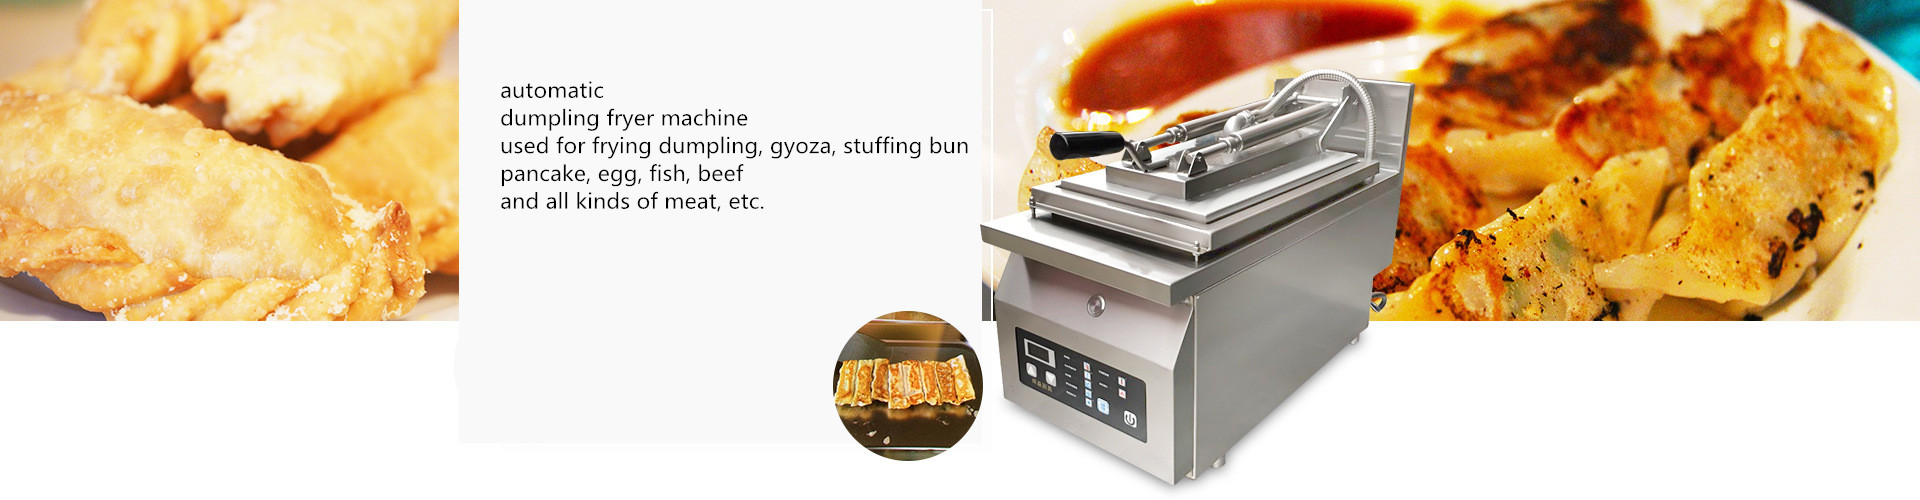  automatic dumpling cooker / gyoza frying machine